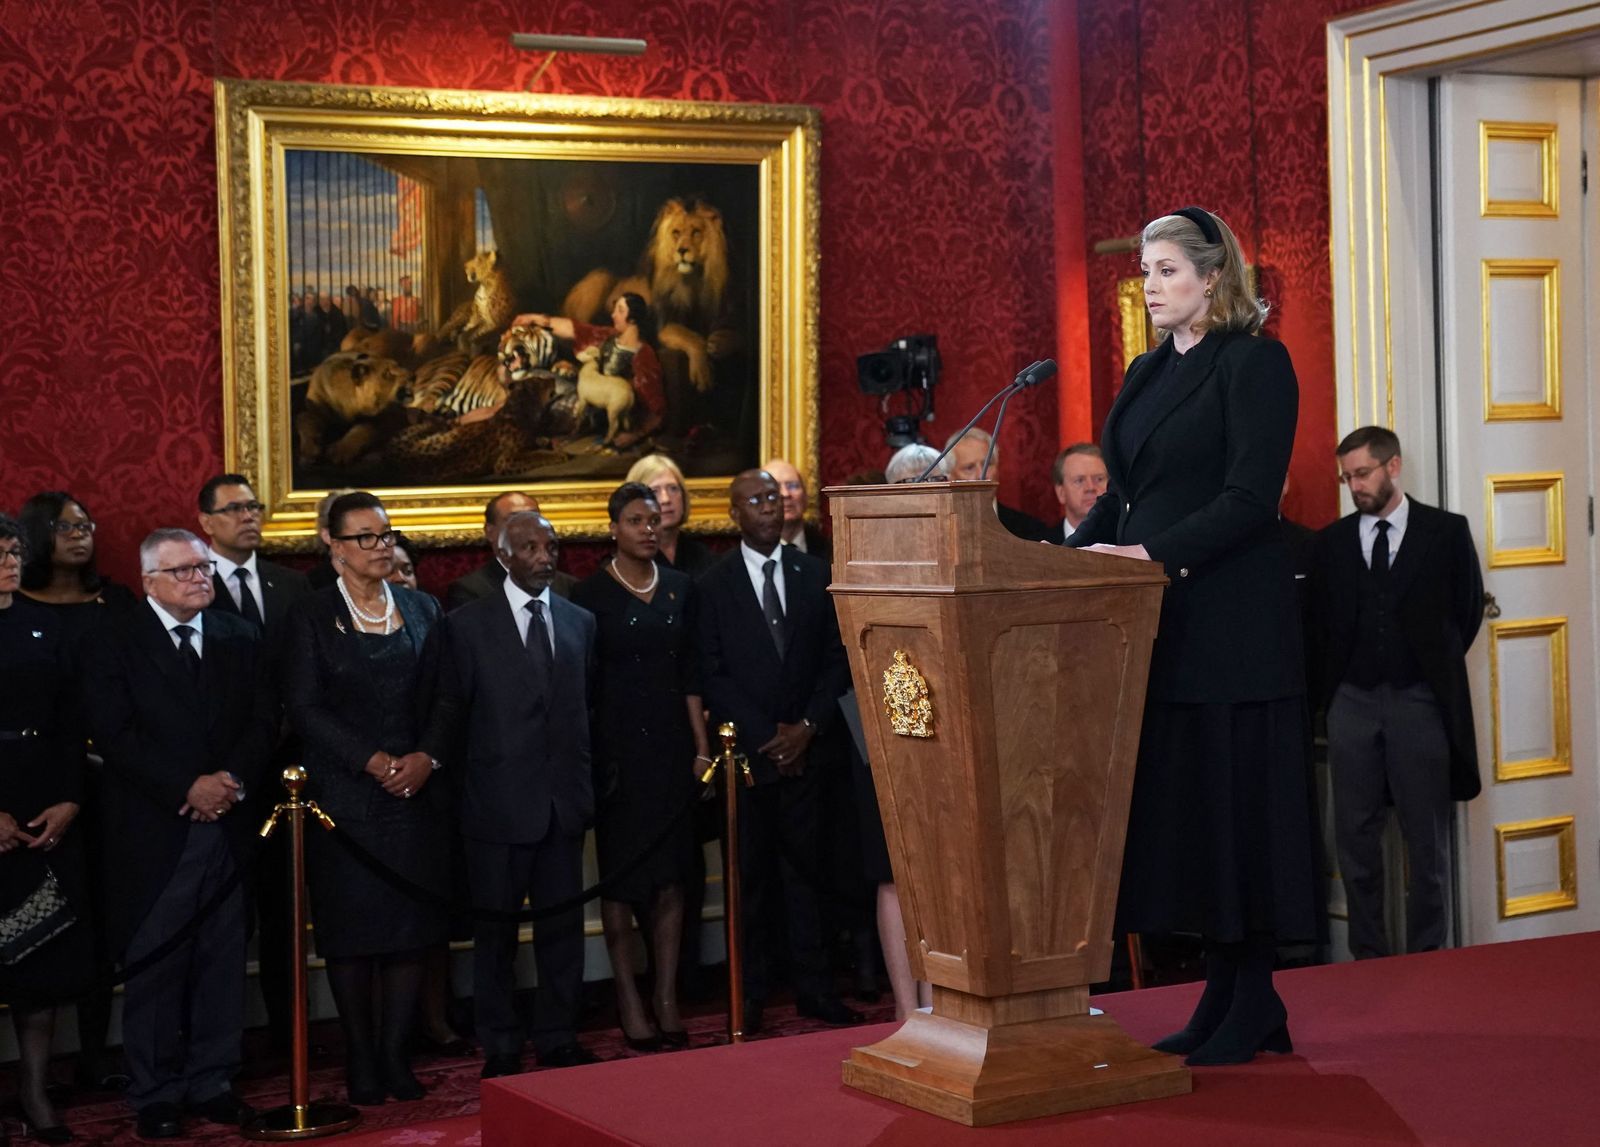 رئيسة مجلس العموم البريطاني بيني موردونت تتحدث خلال اجتماع مجلس اعتلاء العرش- 10 سبتمبر 2022 - AFP